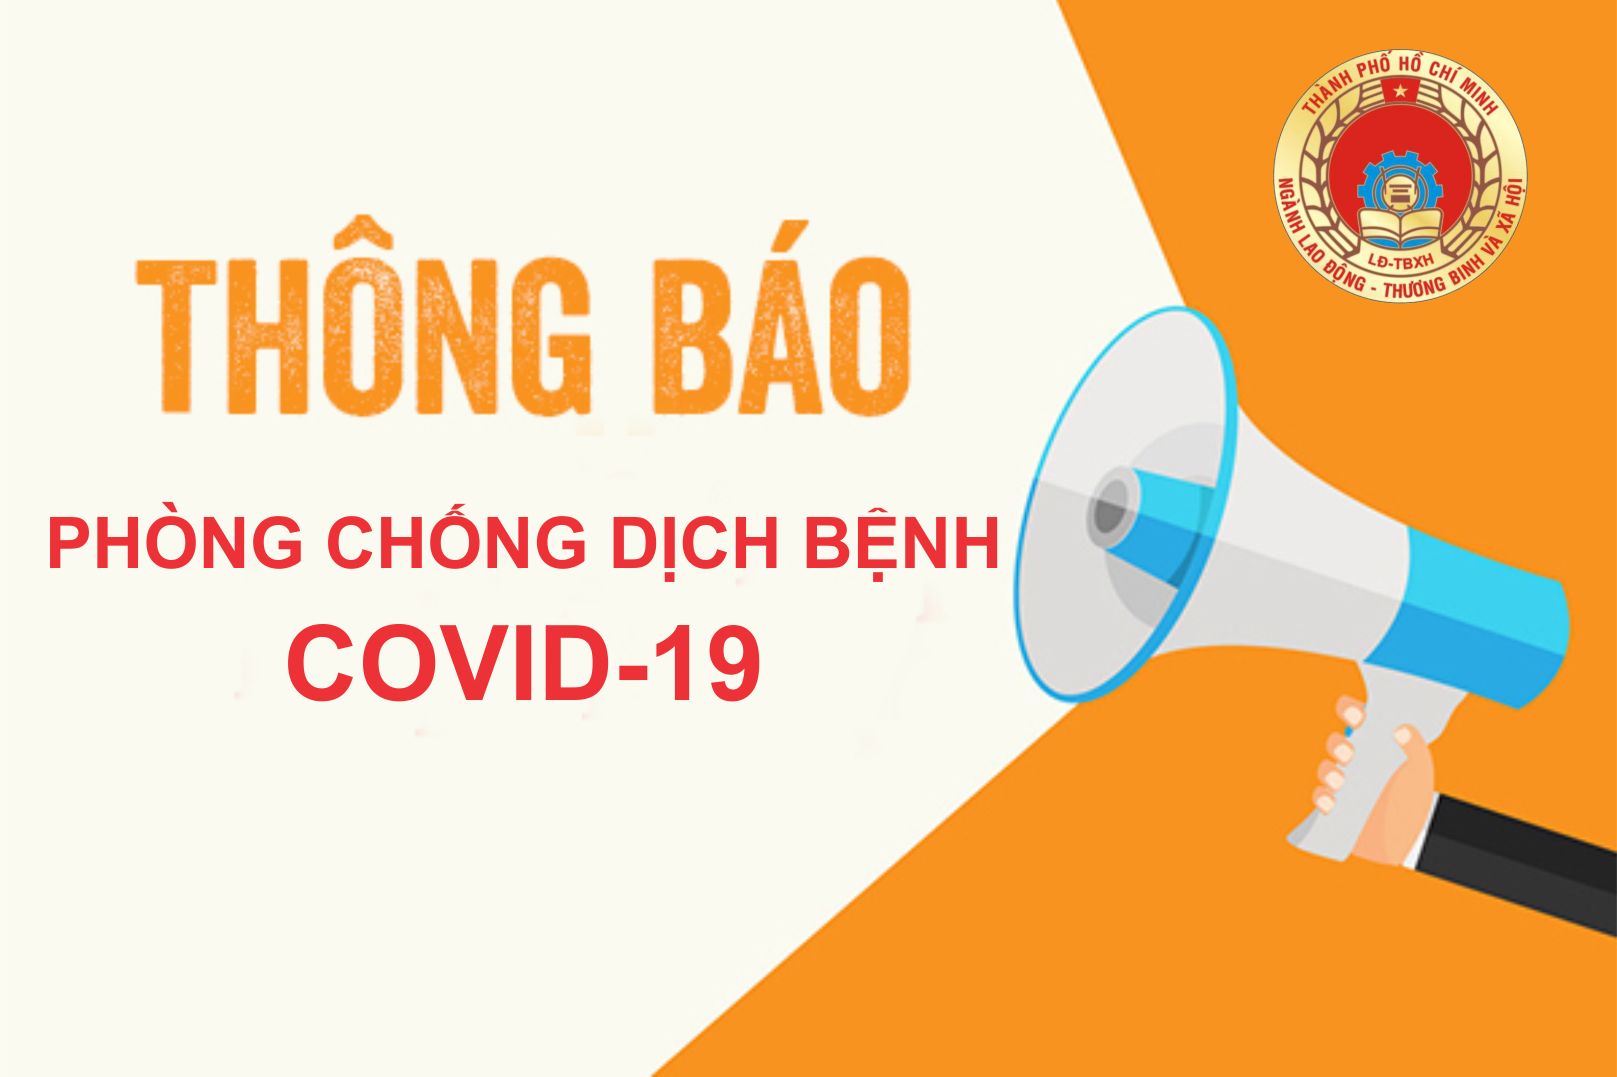 CV 4706: Kiểm tra công tác tổ chức đào tạo trực tiếp tại các cơ sở giáo dục nghề nghiệp trên địa bàn Thành phố Hồ Chí Minh